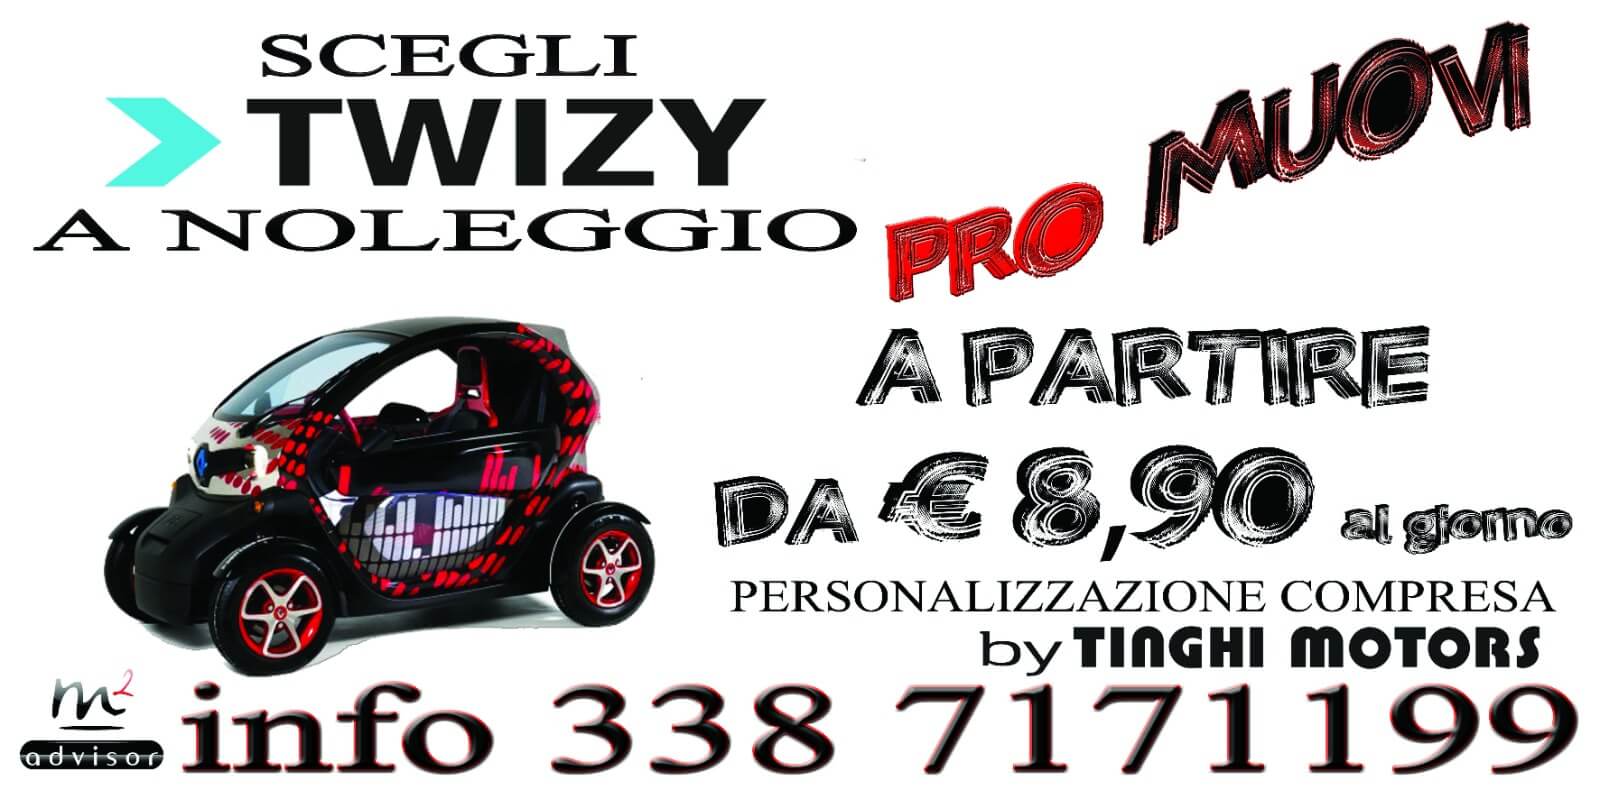 Scegli Twizy a Noleggio Pro muovi a partire da € 8,90 al Giorno.